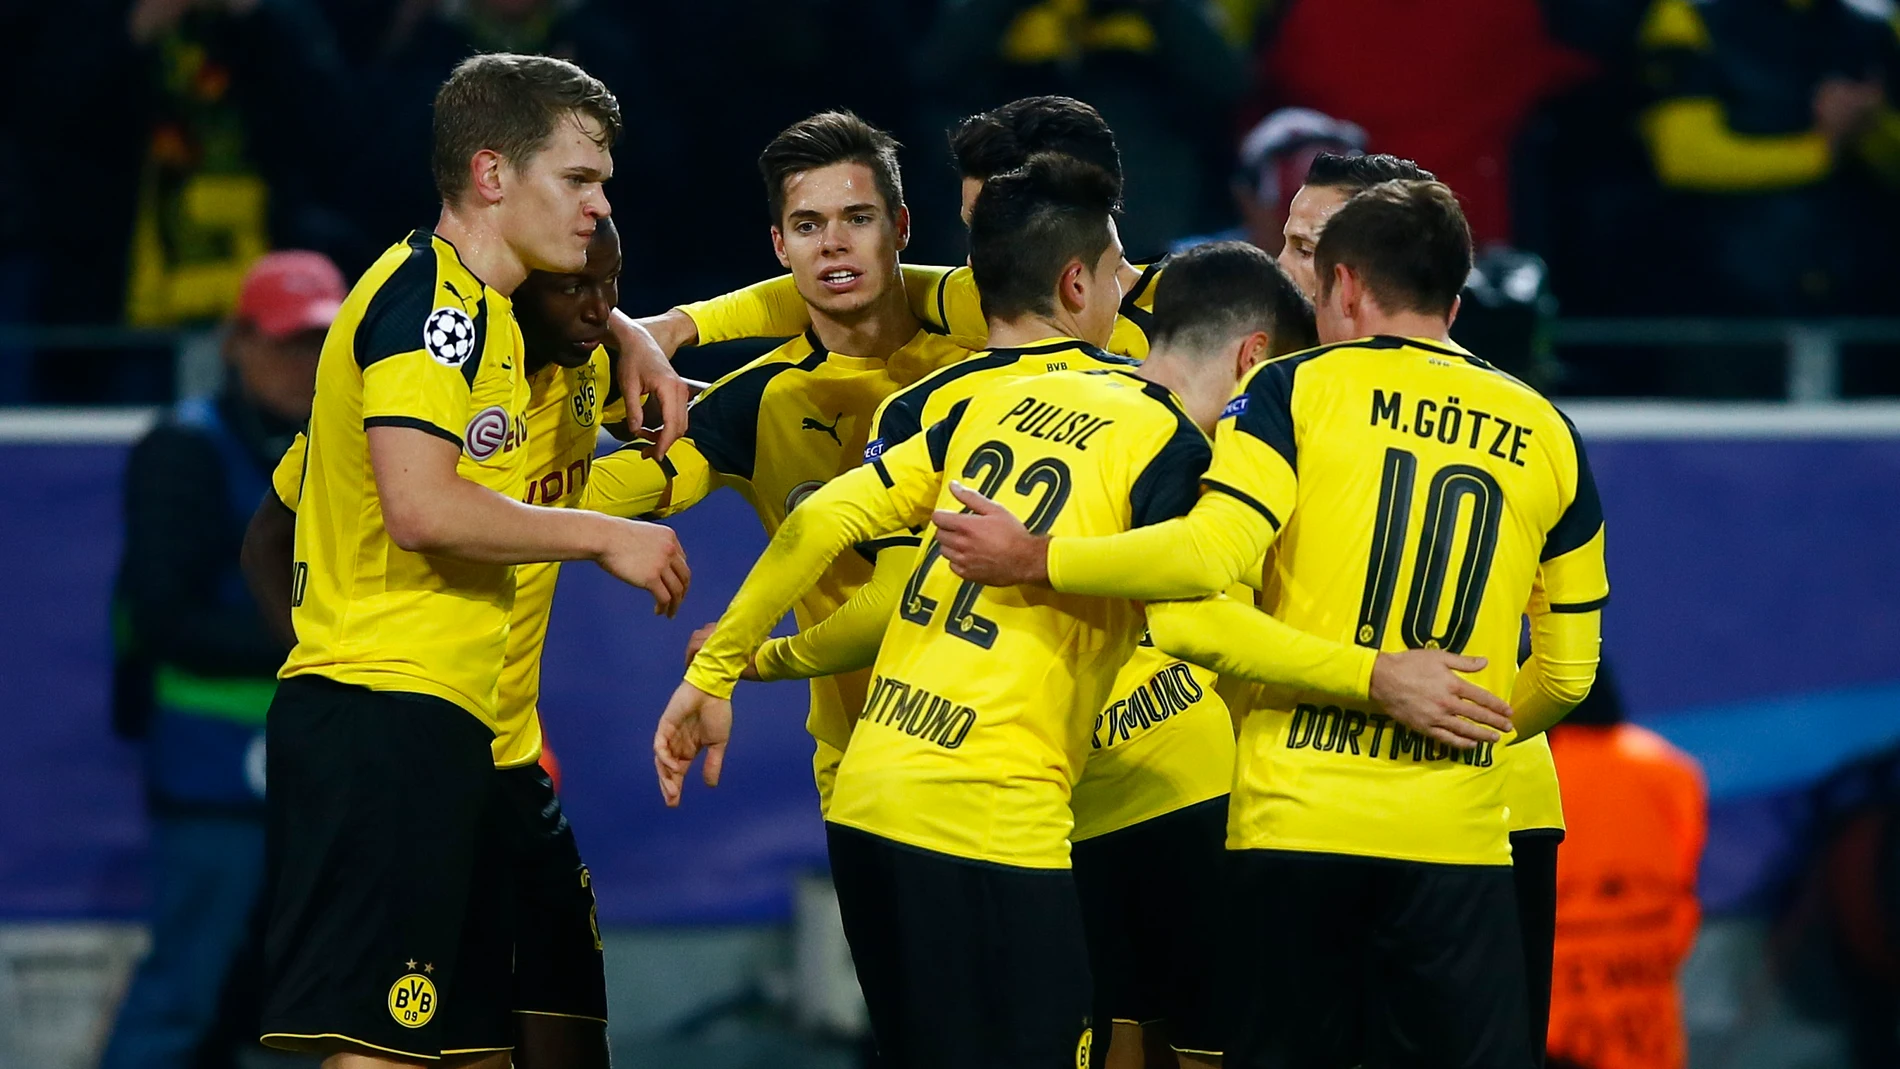 El Dortmund celebra el gol de Ramos